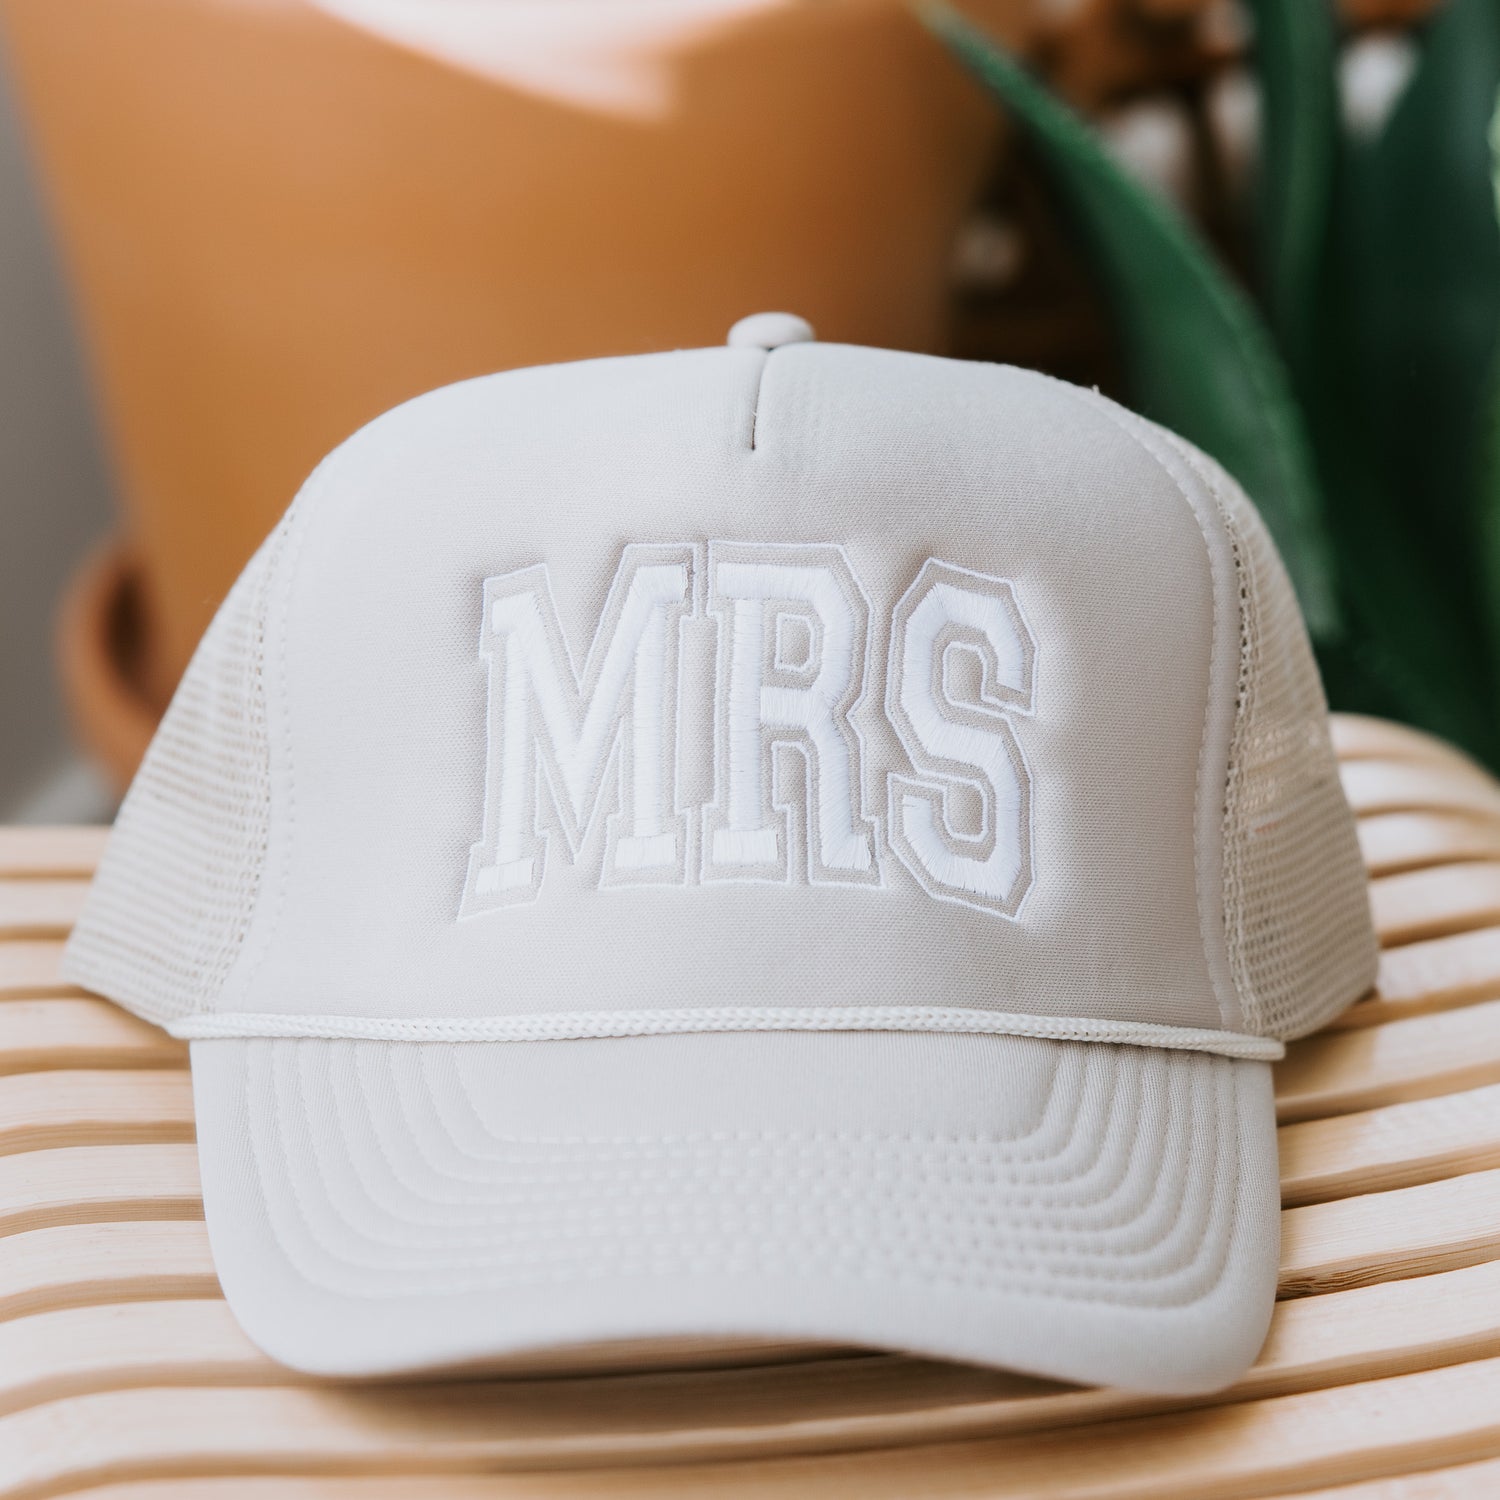 Mrs Trucker Hat